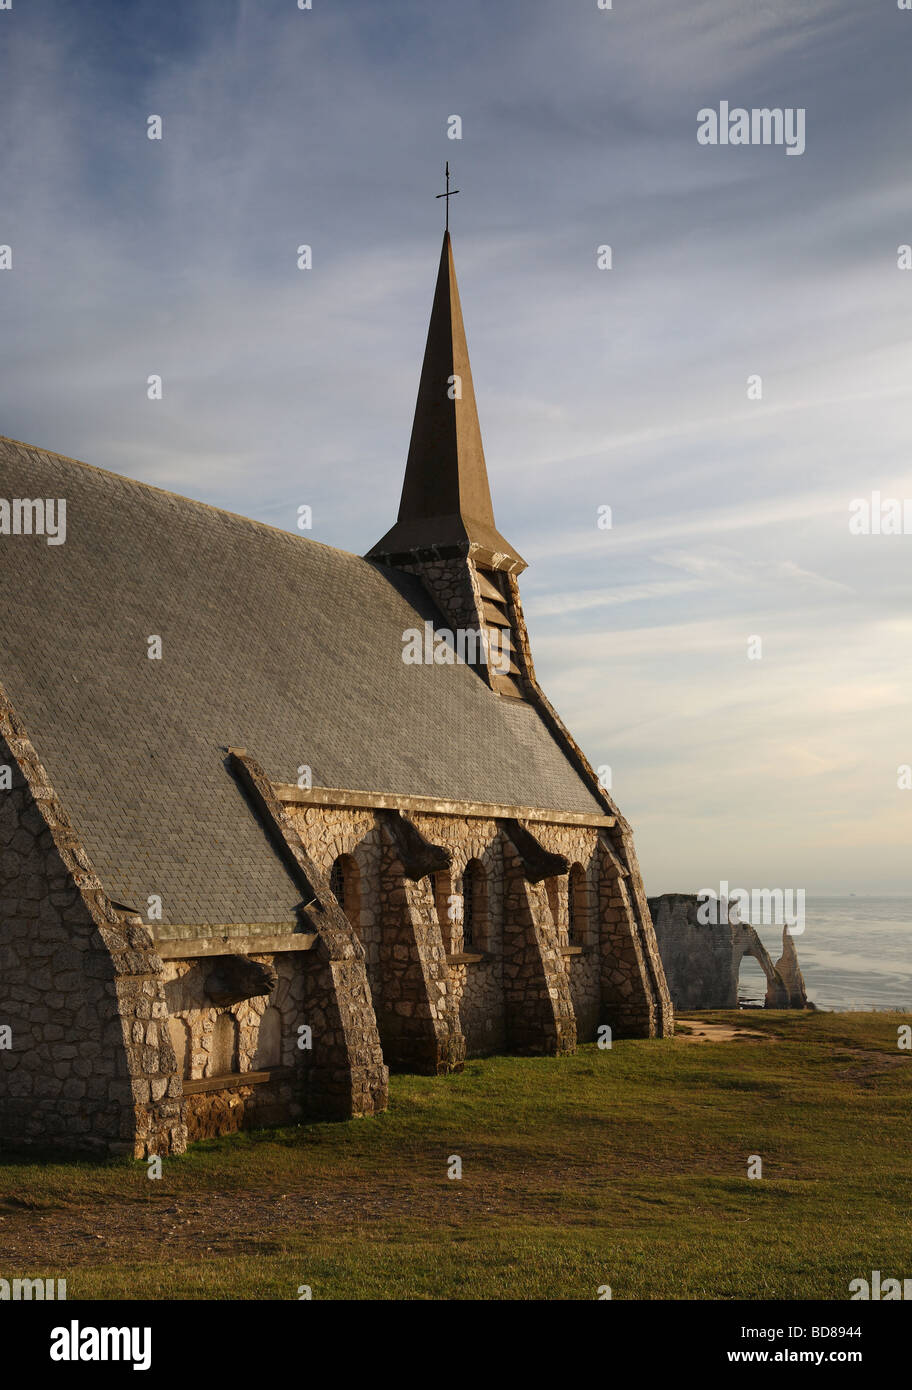 L'église de Notre Dame de l'arche naturelle et une aiguille à l'arrière-plan de falaises, Etretat, Normandie, France, Europe Banque D'Images